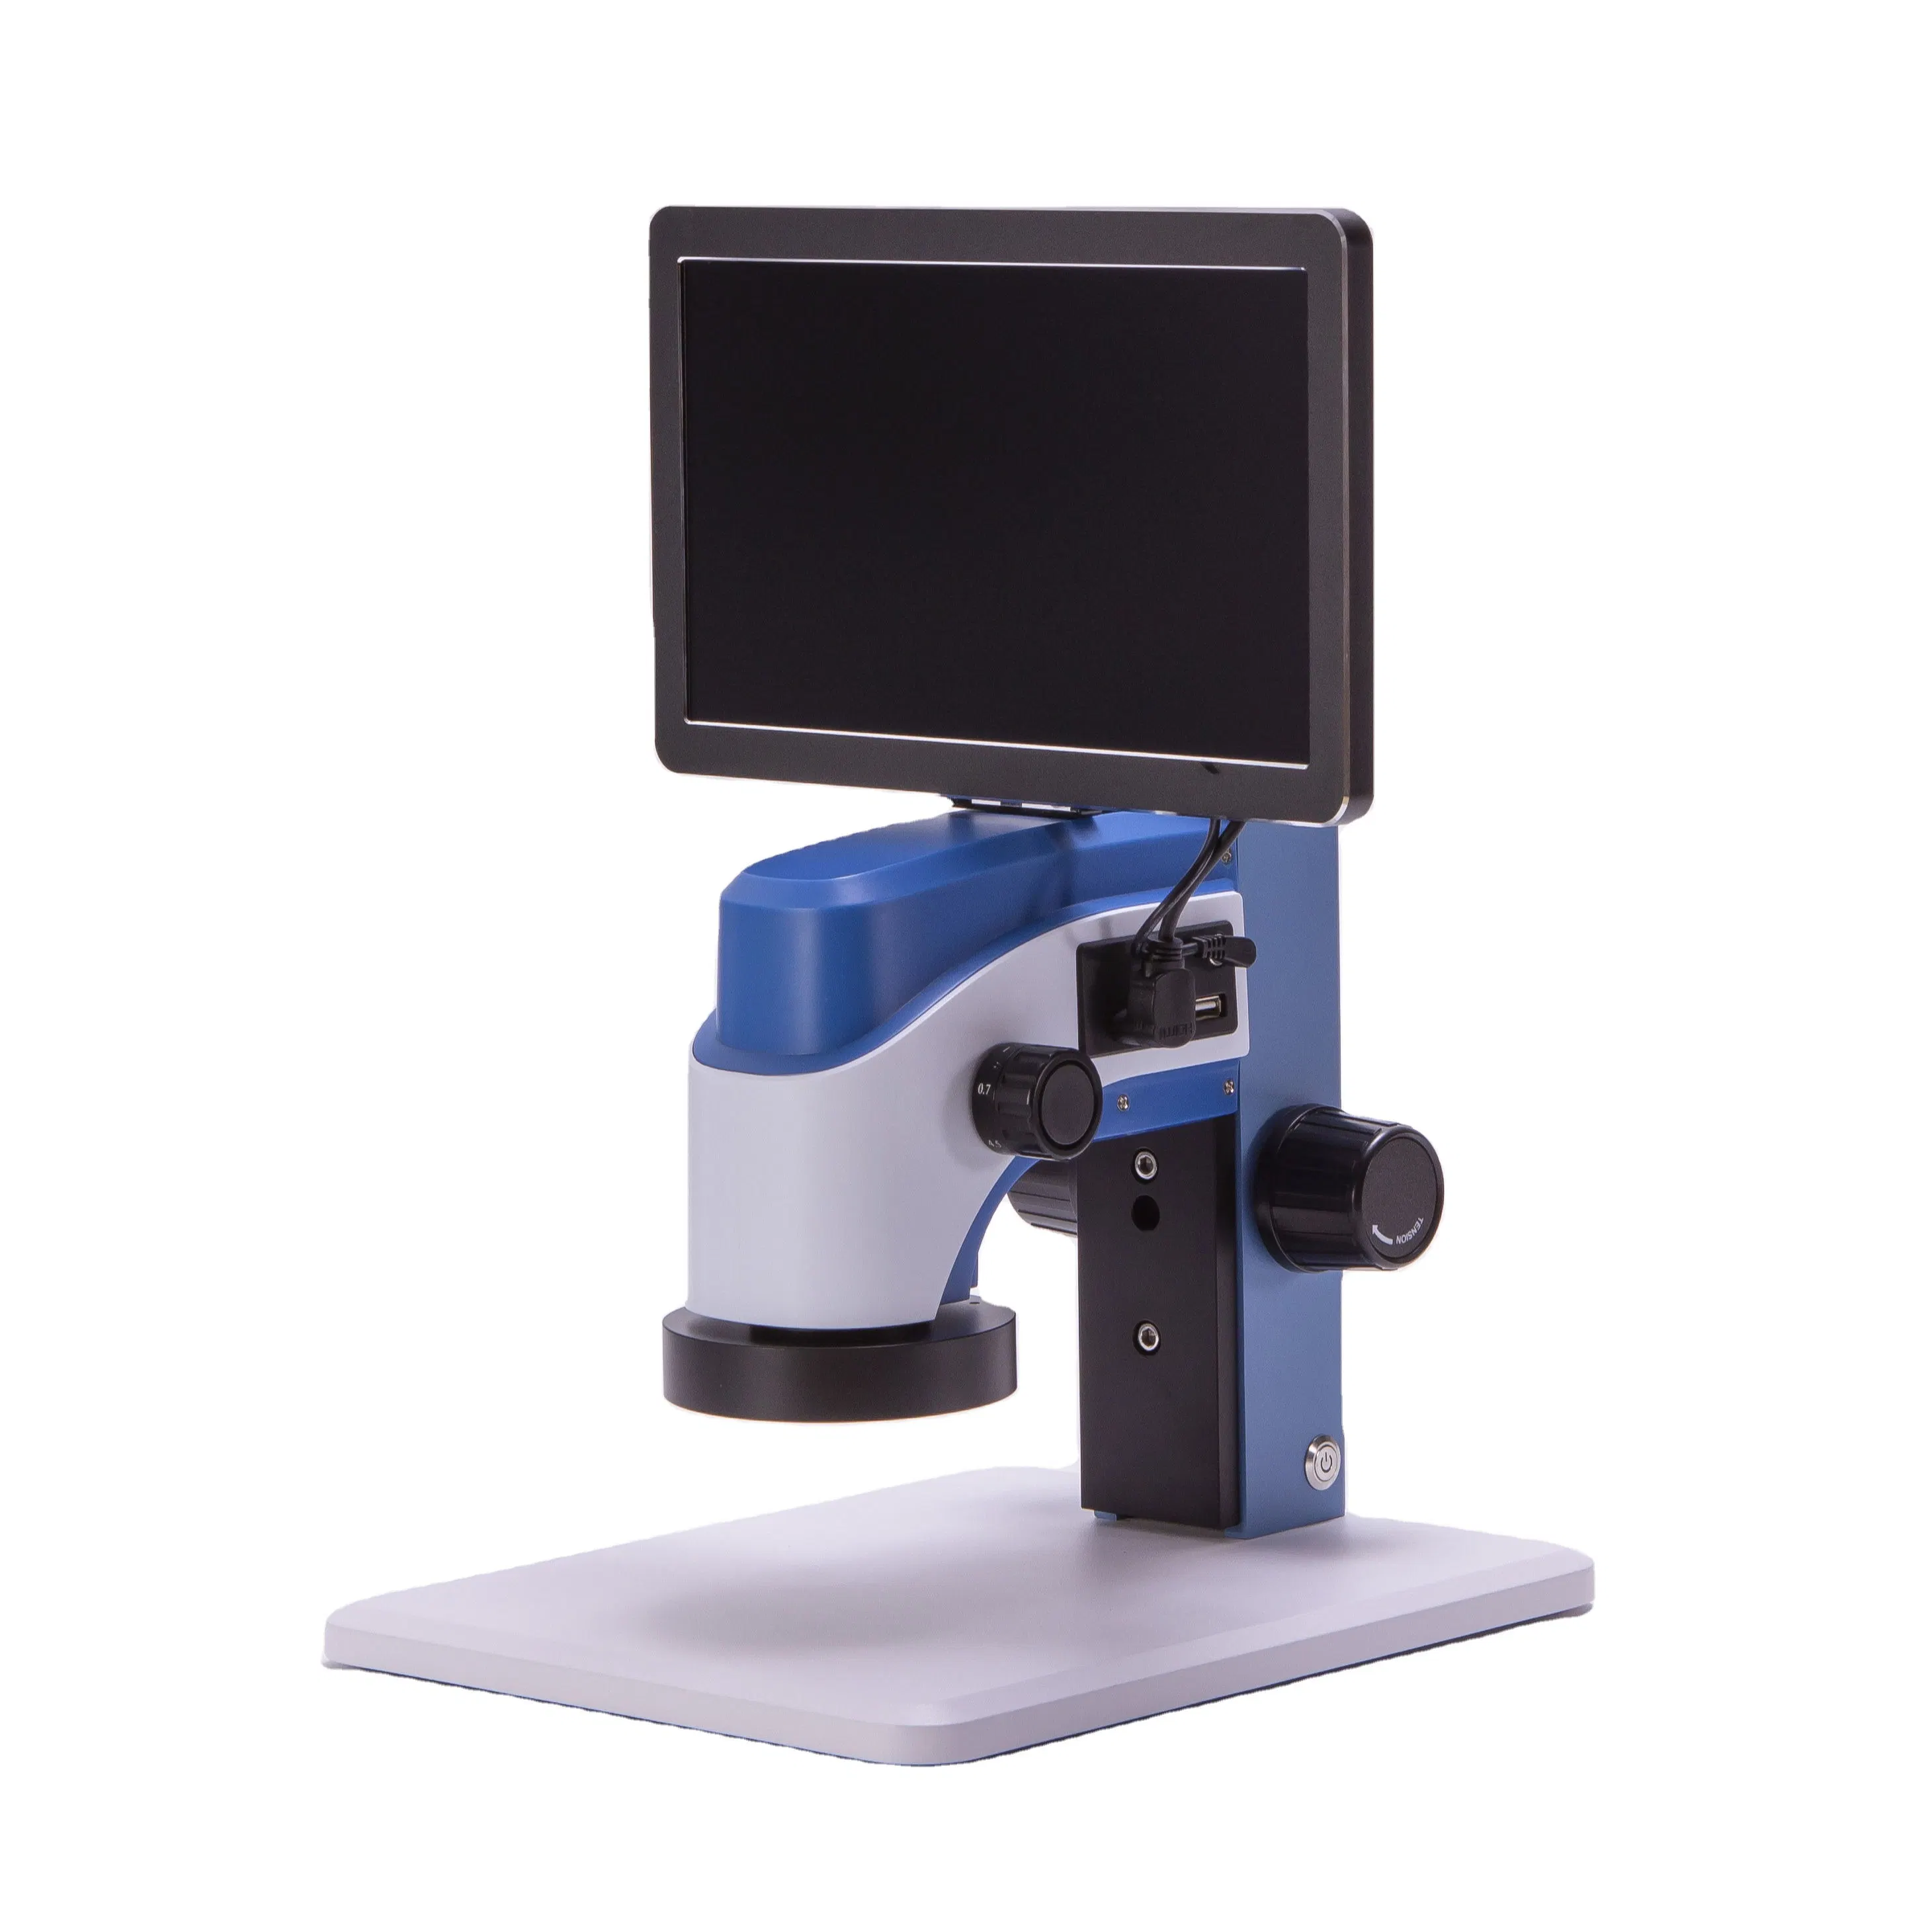 Medición de zoom continua de alta definición Vídeo microscopio ajuste automático de la ampliación, calibración libre